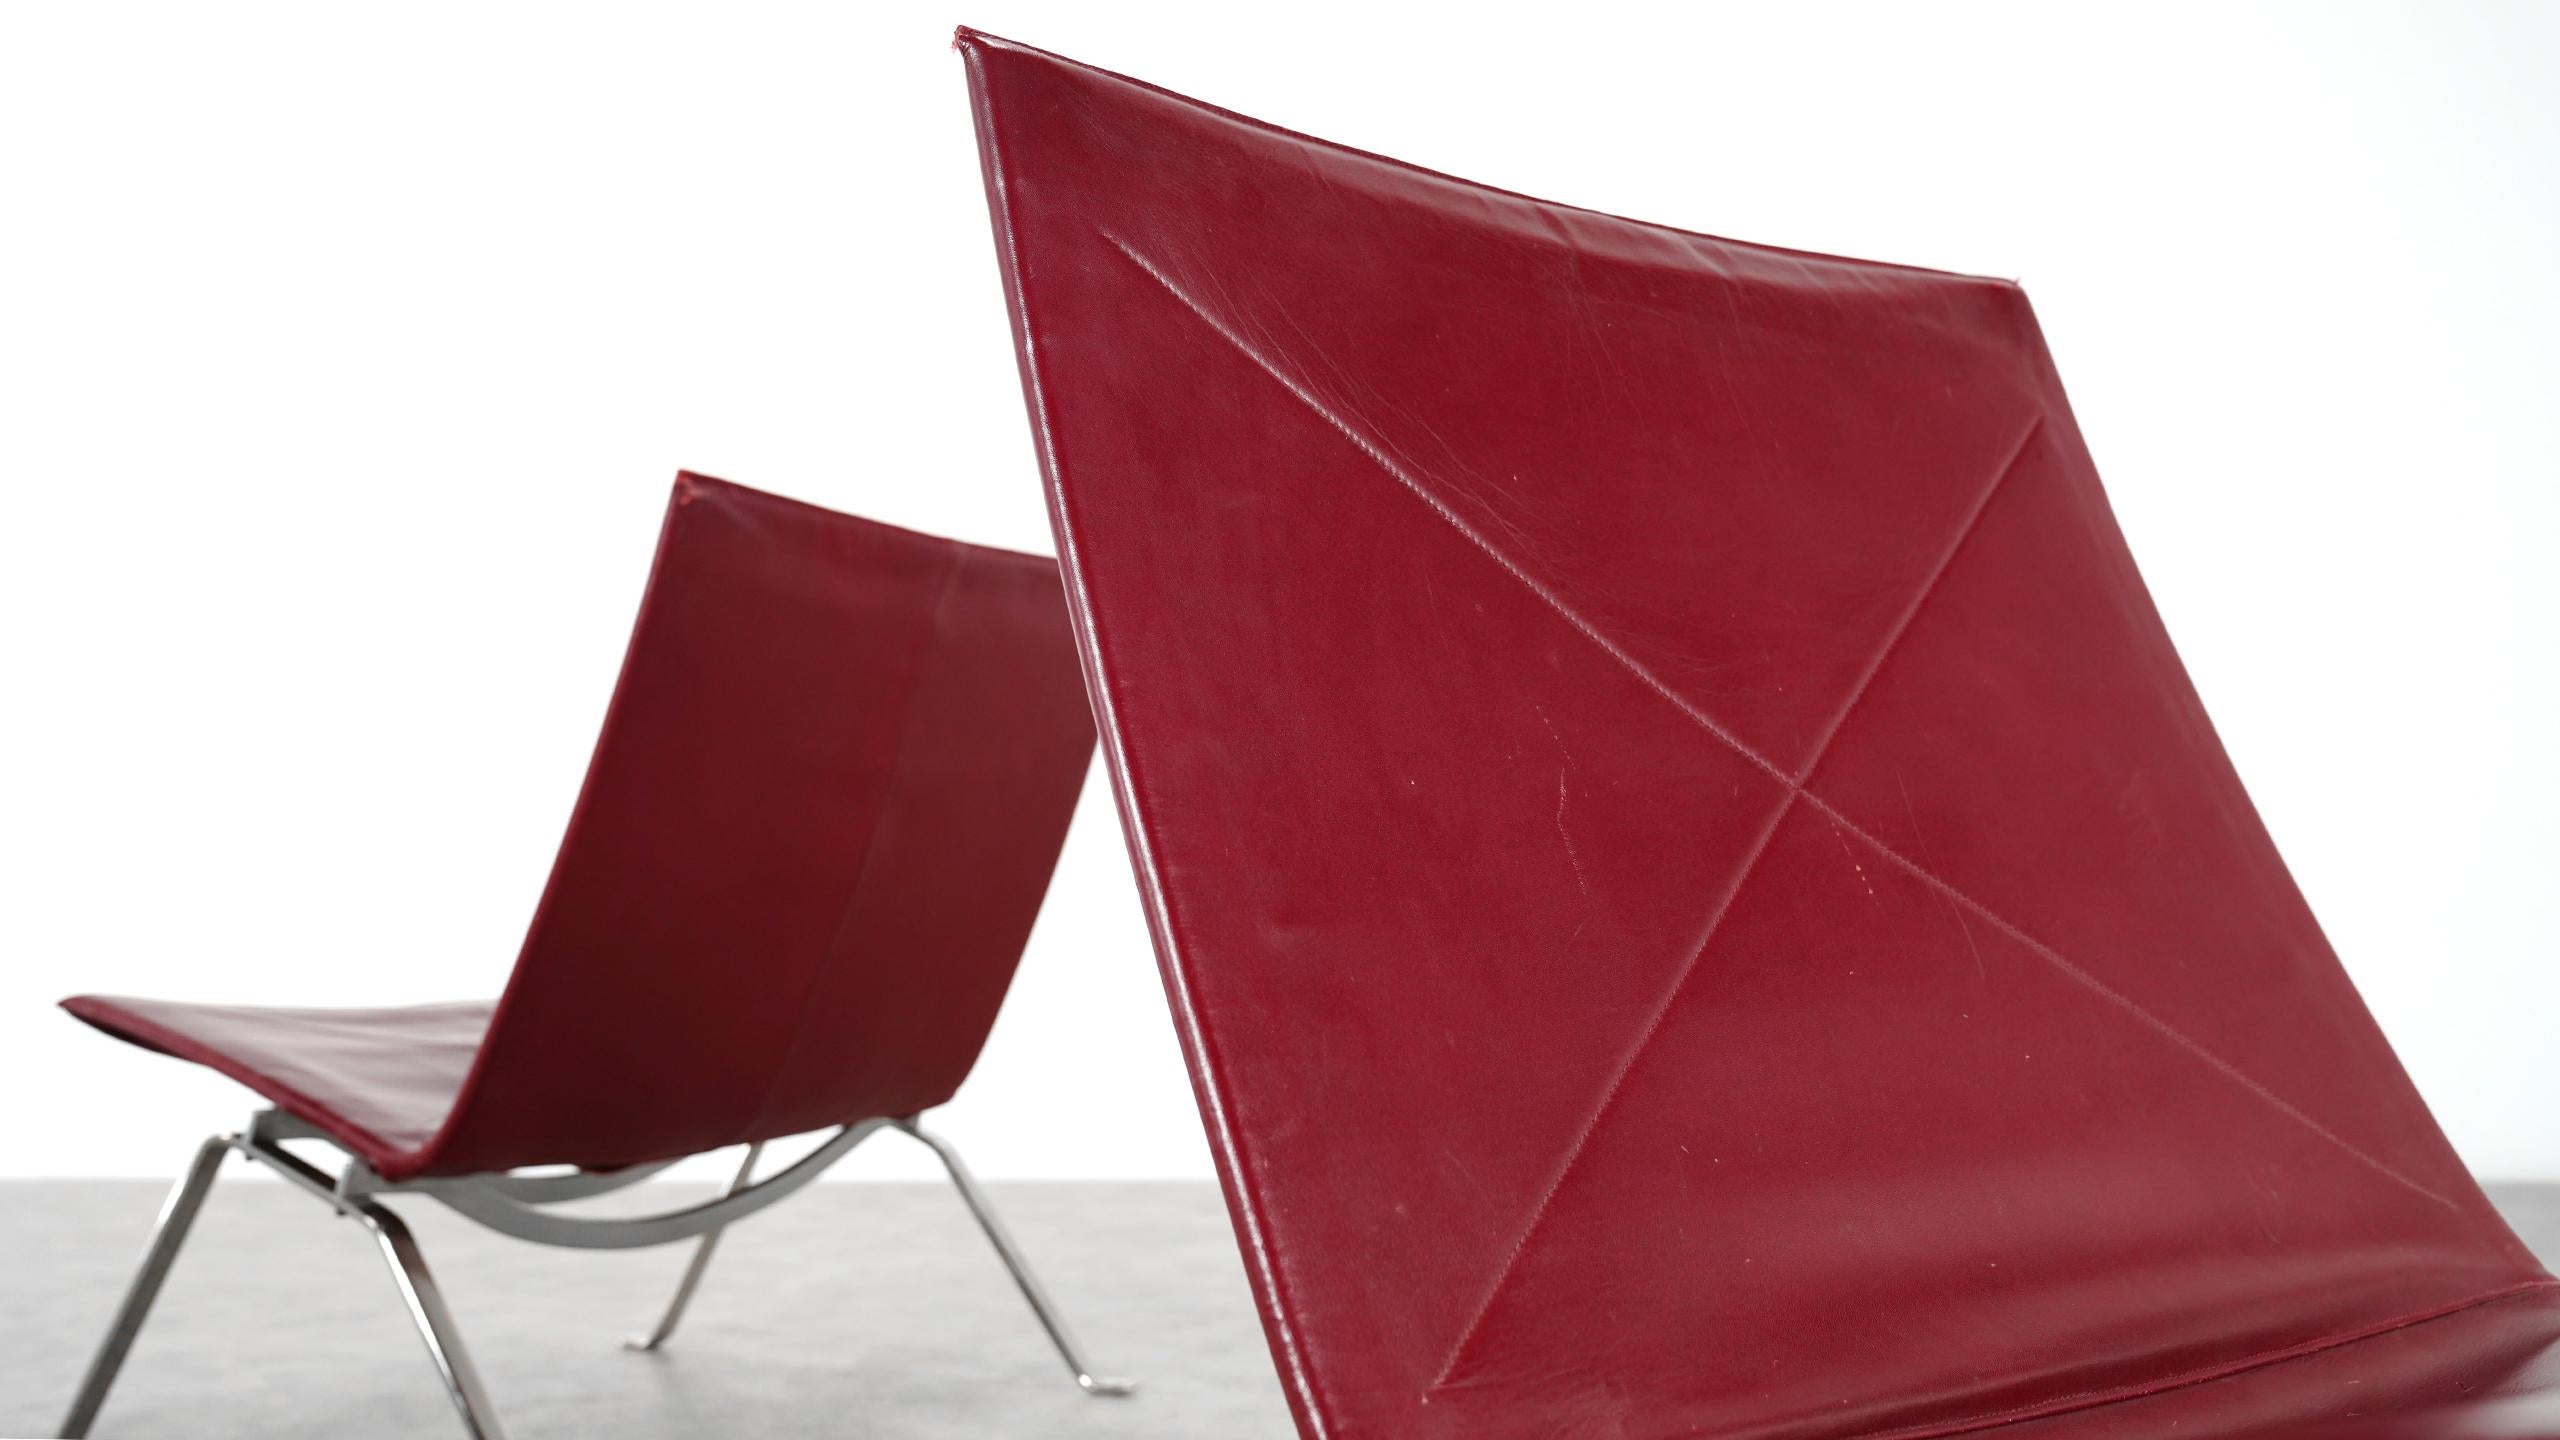 2 Poul Kjaerholm PK22 Lounge Chair, 1956 for E. Kold Christensen, Denmark 1